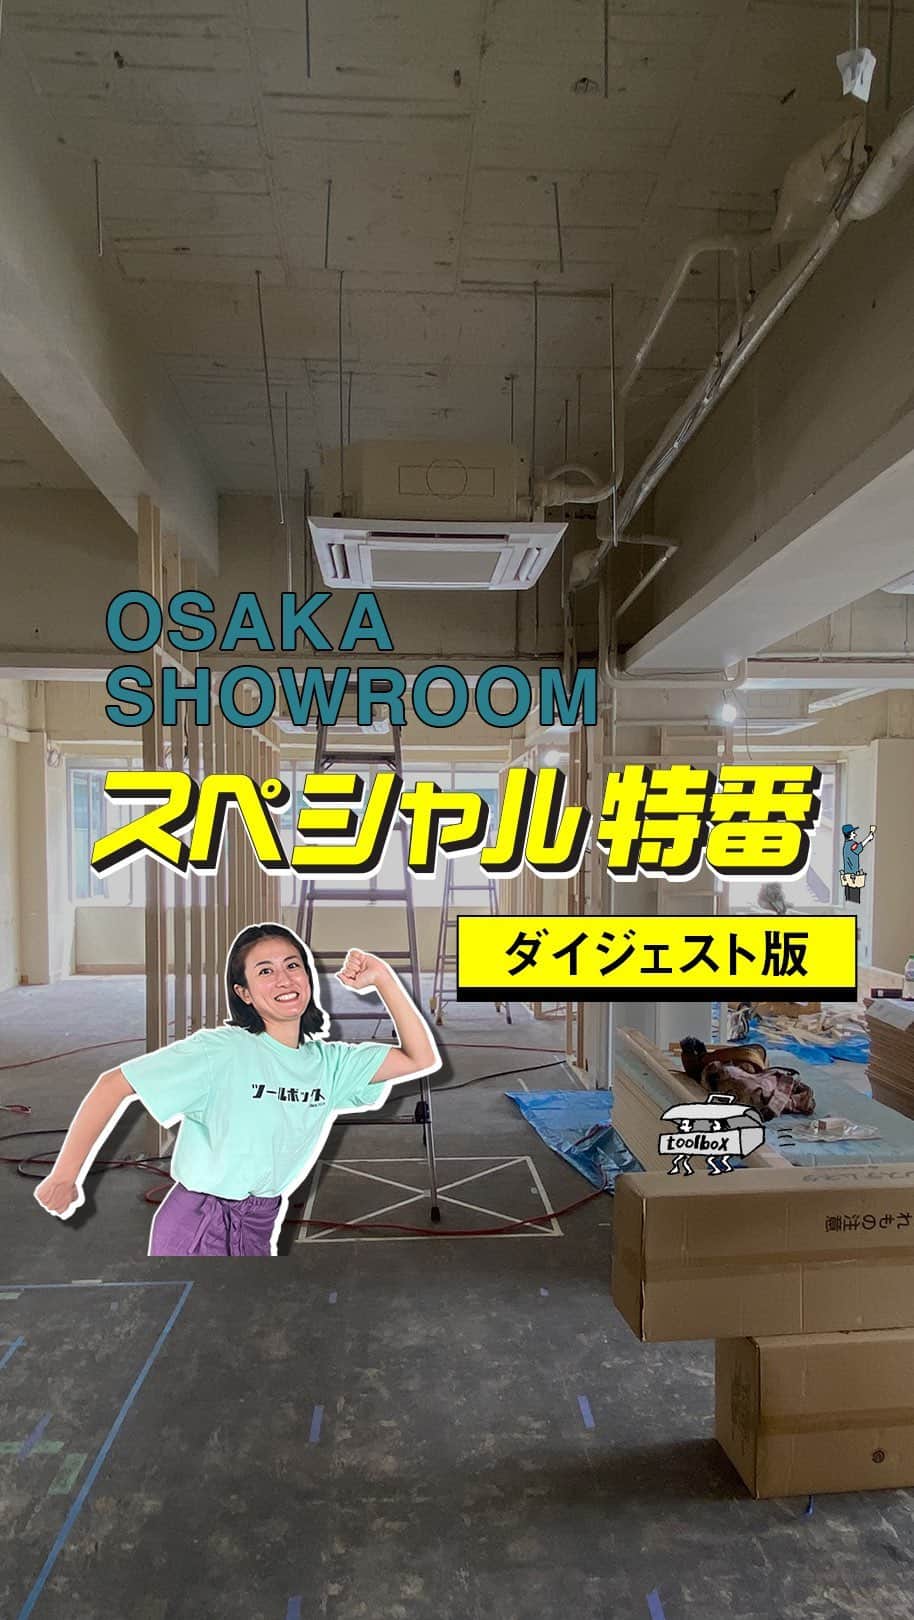 toolbox(ツールボックス)のインスタグラム：「大阪ショールームいよいよ完成間近！  東京・目白に続き、2店舗目となる大阪ショールームオープンに先駆け、9月に行ったプレイベント。大阪・中津のショップやこれからのショールームについて詳しくご紹介させていただきました。  そしてついに、2023年10月28日(土)に大阪ショールームがオープンすることが決定！  それに伴い、10月28日(土)午前11時からオープニングイベントを開催します。  ショールームを自由にご覧いただける上、「スタンダードブックストア」中川和彦さんや、「中津ブルワリー」鈴木悟さんをゲストに招いたトークセッションを開催予定。また、中津ブルワリーとコラボレーションした「toolboxオリジナルビール」も数量限定で販売予定です。  今回プレイベントのスペシャル特番でお邪魔したショップは、全てショールームから徒歩圏内。ショップ情報をまとめた「中津マップ」も準備していますので、街歩きも一緒に楽しんでいただけたらと思います！  お土産もご用意して、皆様のご来場お待ちしております。  ーーーーーーーーーーーーーーーーーーーーーー  大阪・中津ショールームオープニングイベント  日時：2023年10月28日（土） 　　　11:00～17:00 所在地　　：大阪府大阪市北区中津3丁目10番4 西田ビル3階 アクセス　： 大阪メトロ御堂筋線 「中津駅」 徒歩4分 　　　　　　 阪急神戸線・宝塚線 「中津駅」 徒歩3分  ーーーーーーーーーーーーーーーーーーーーーーー  #toolbox #r_toolbox #家づくり#ウェブショップ #ショールーム #オープン#オープンイベント #大阪 #中津#古民家改装#キタの北ナガヤ#キタナガ#西田ビル #イケフェス #ビル探索 #工事中 #施工 #中津商店街 #itocaci #34kitchen #blackrimmed#ラカボ#中津ブルワリー #ブルワリー#クラフトビール #ハイパー縁側 #中津商店街 #街歩き#マップ#中津マップ」